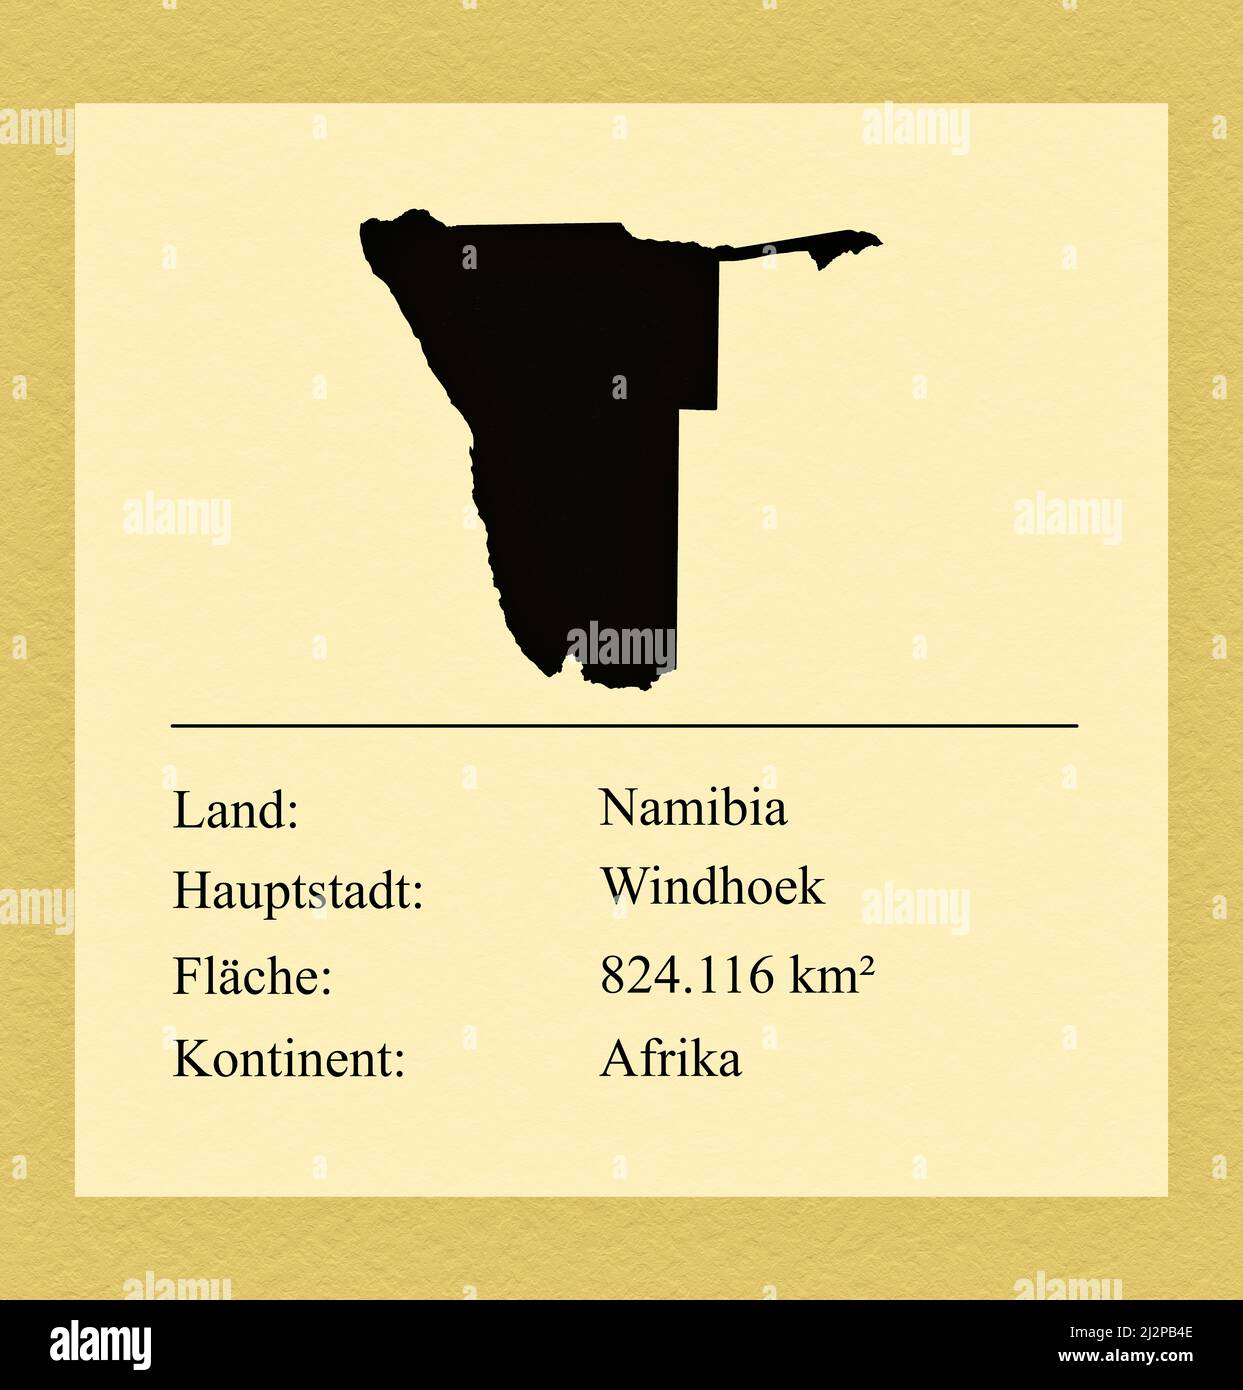 Umrisse des Landes Namibia, darunter ein kleiner Steckbrief mit Ländernamen, Hauptstadt, Fläche und Kontinent Stock Photo